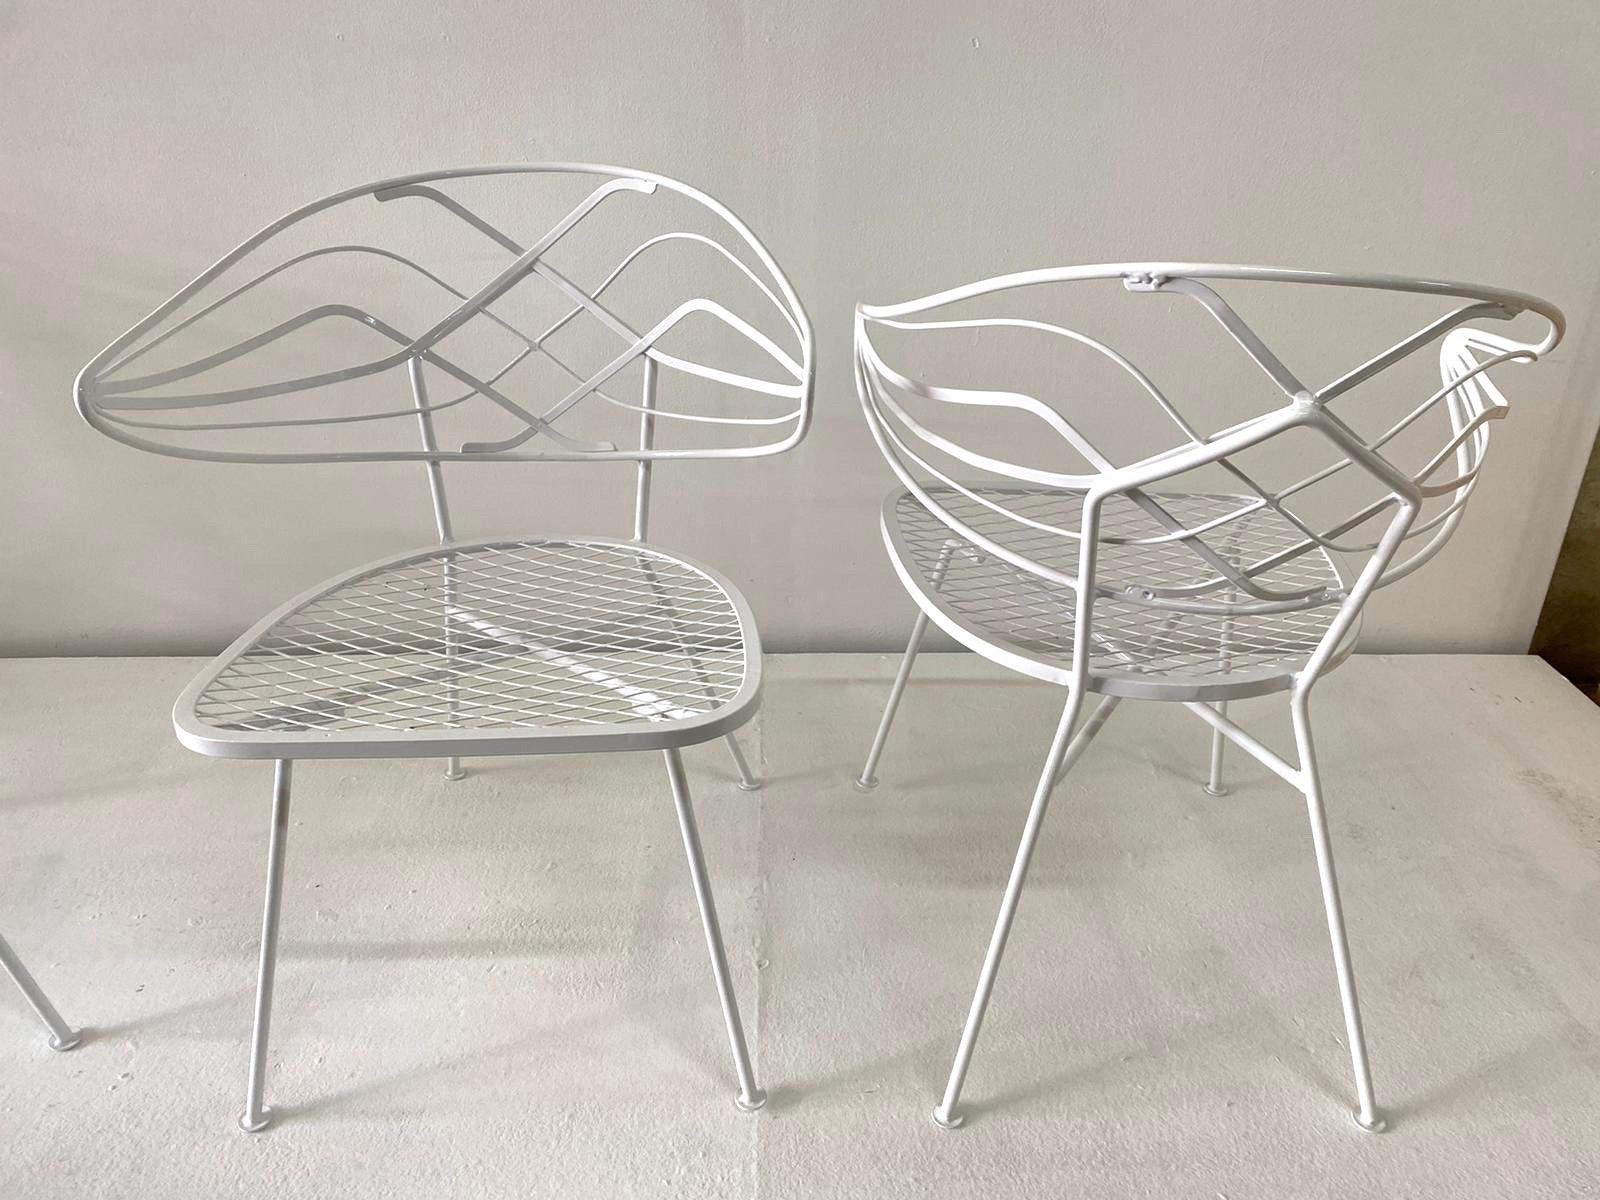 Quatre magnifiques chaises à dossier courbe de style Klismos - nouvellement revêtues de poudre. Un style chic et de superbes chaises longues d'été.